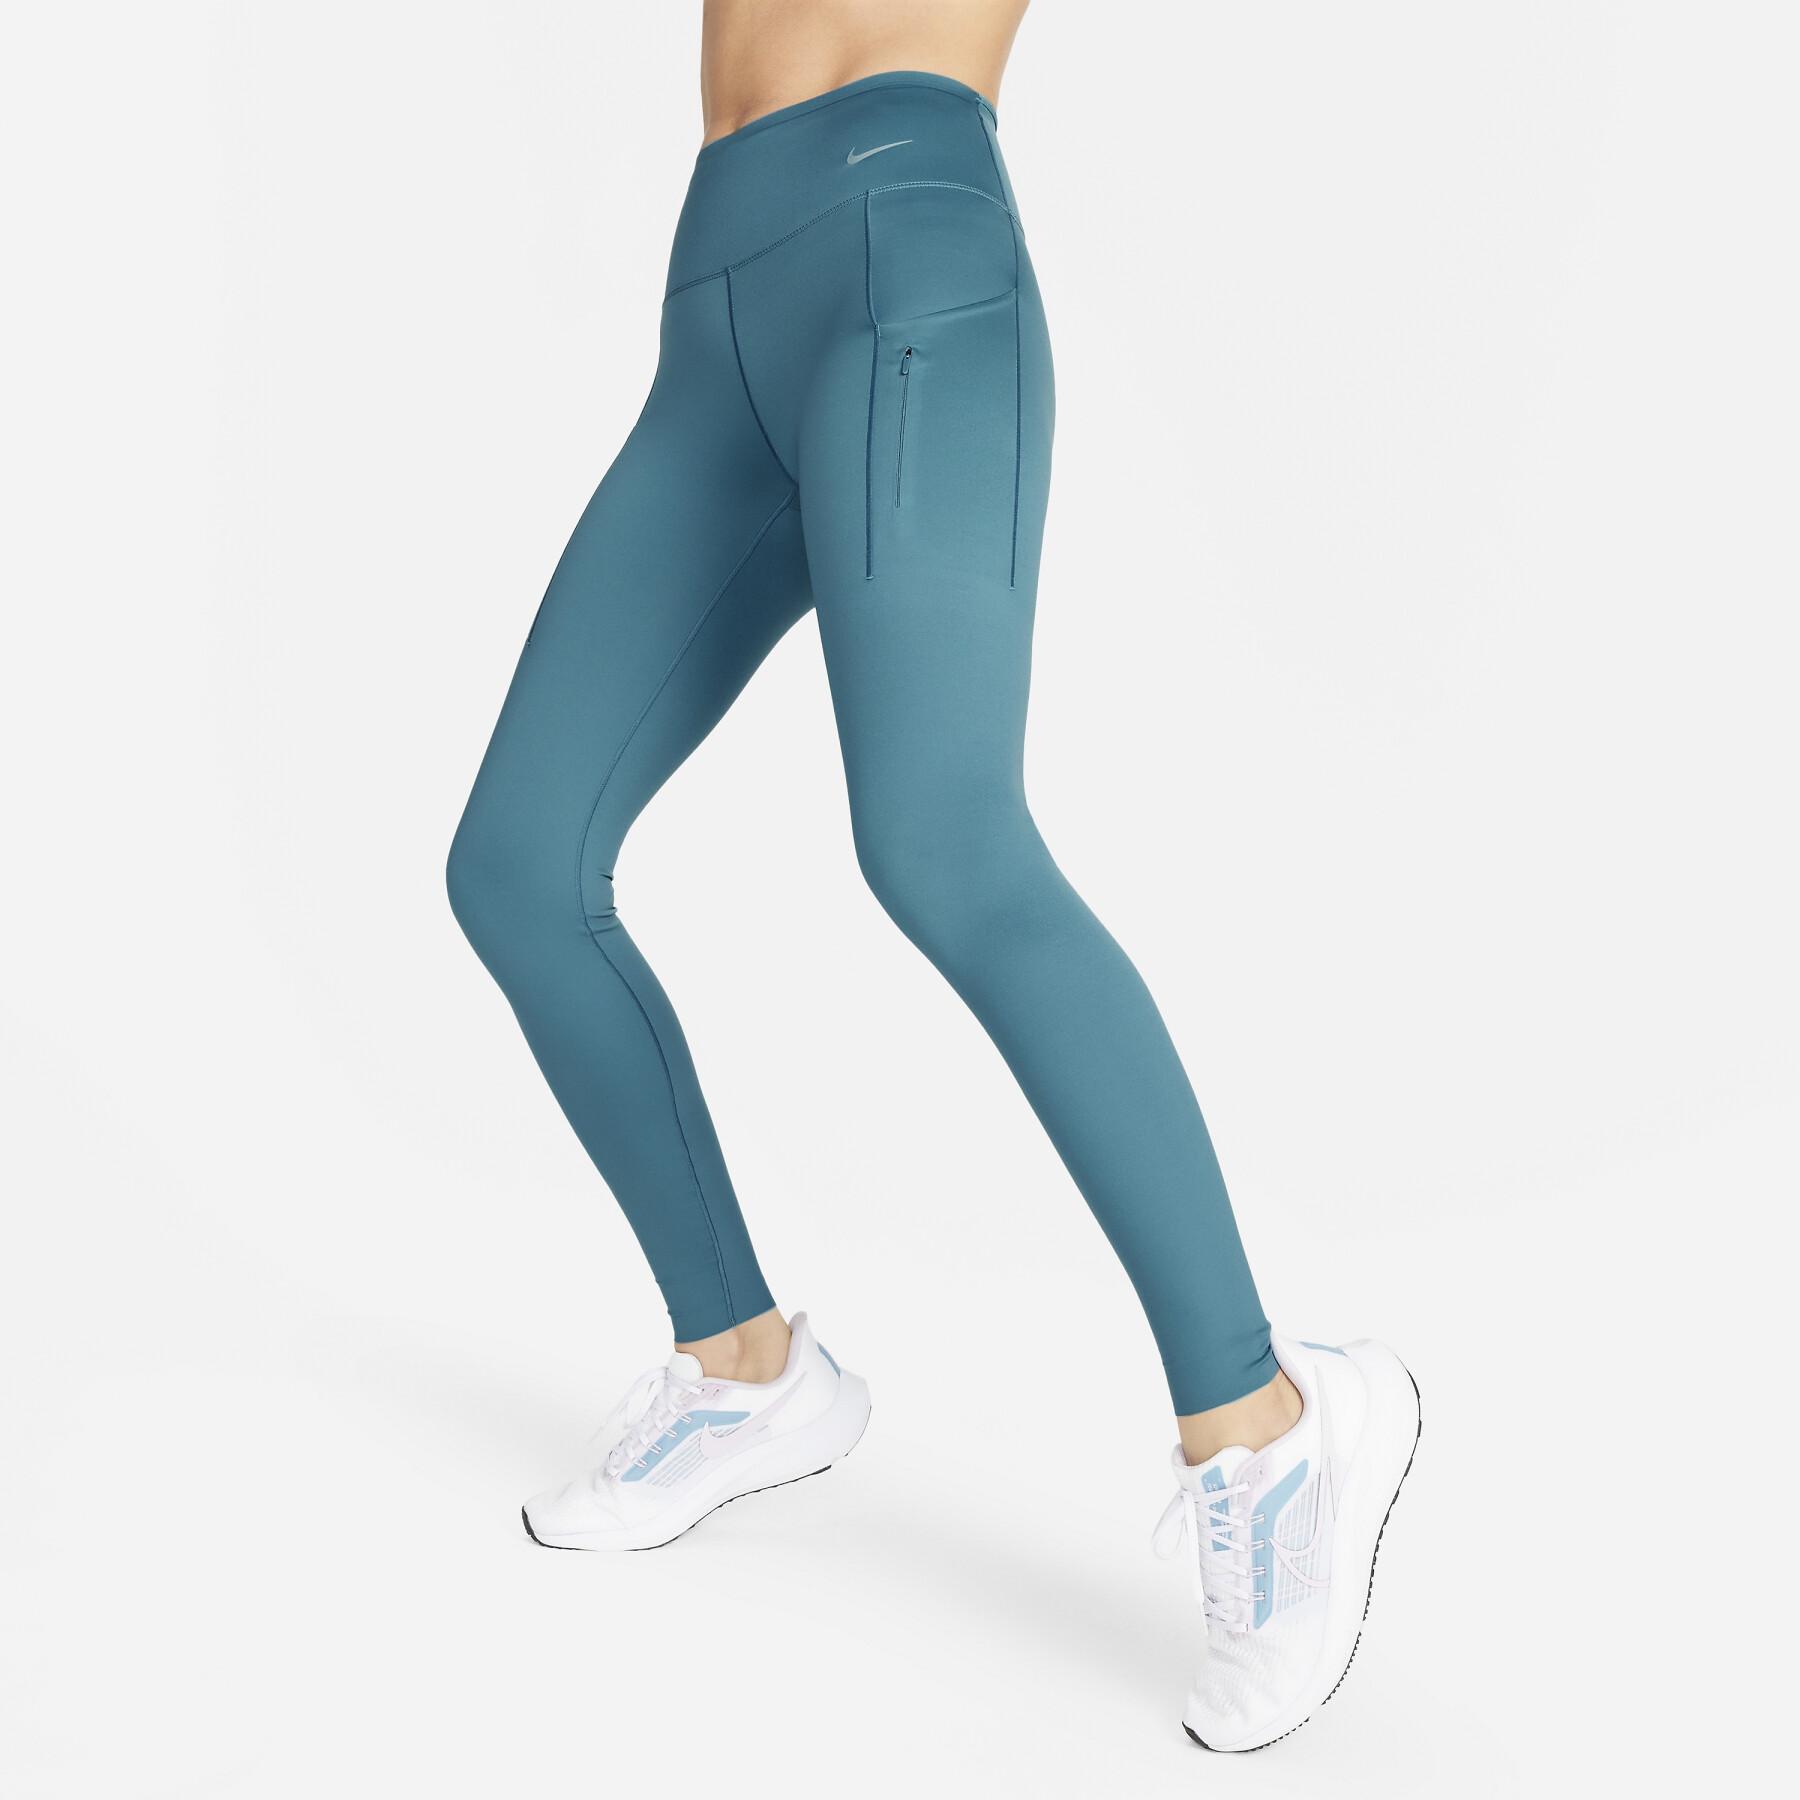 Legging femme Nike Dri-Fit Go MR